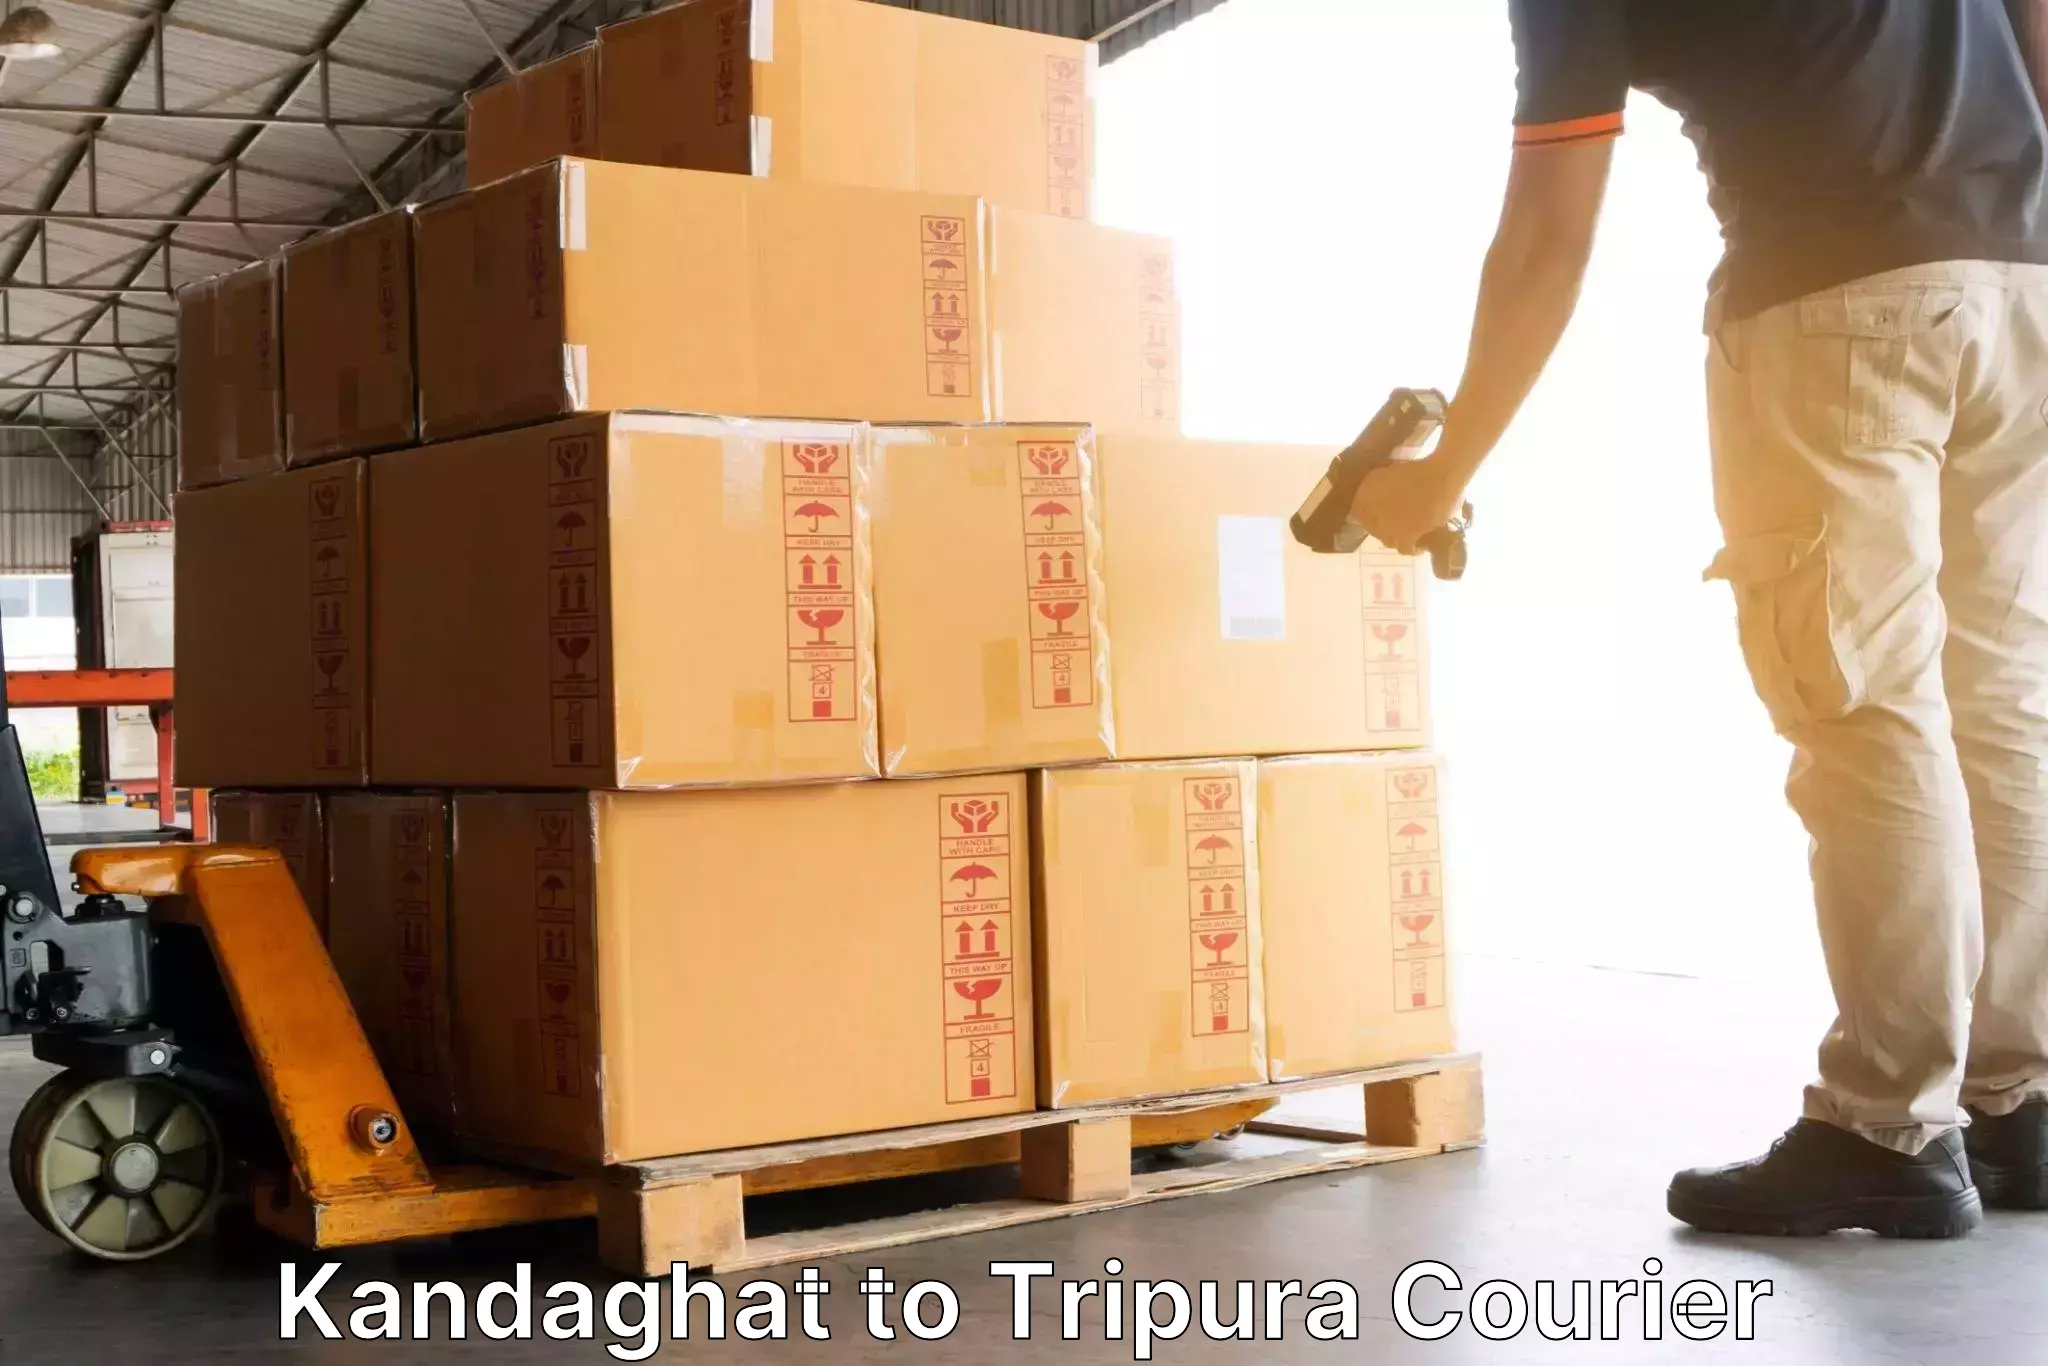 Customized shipping options Kandaghat to Kailashahar